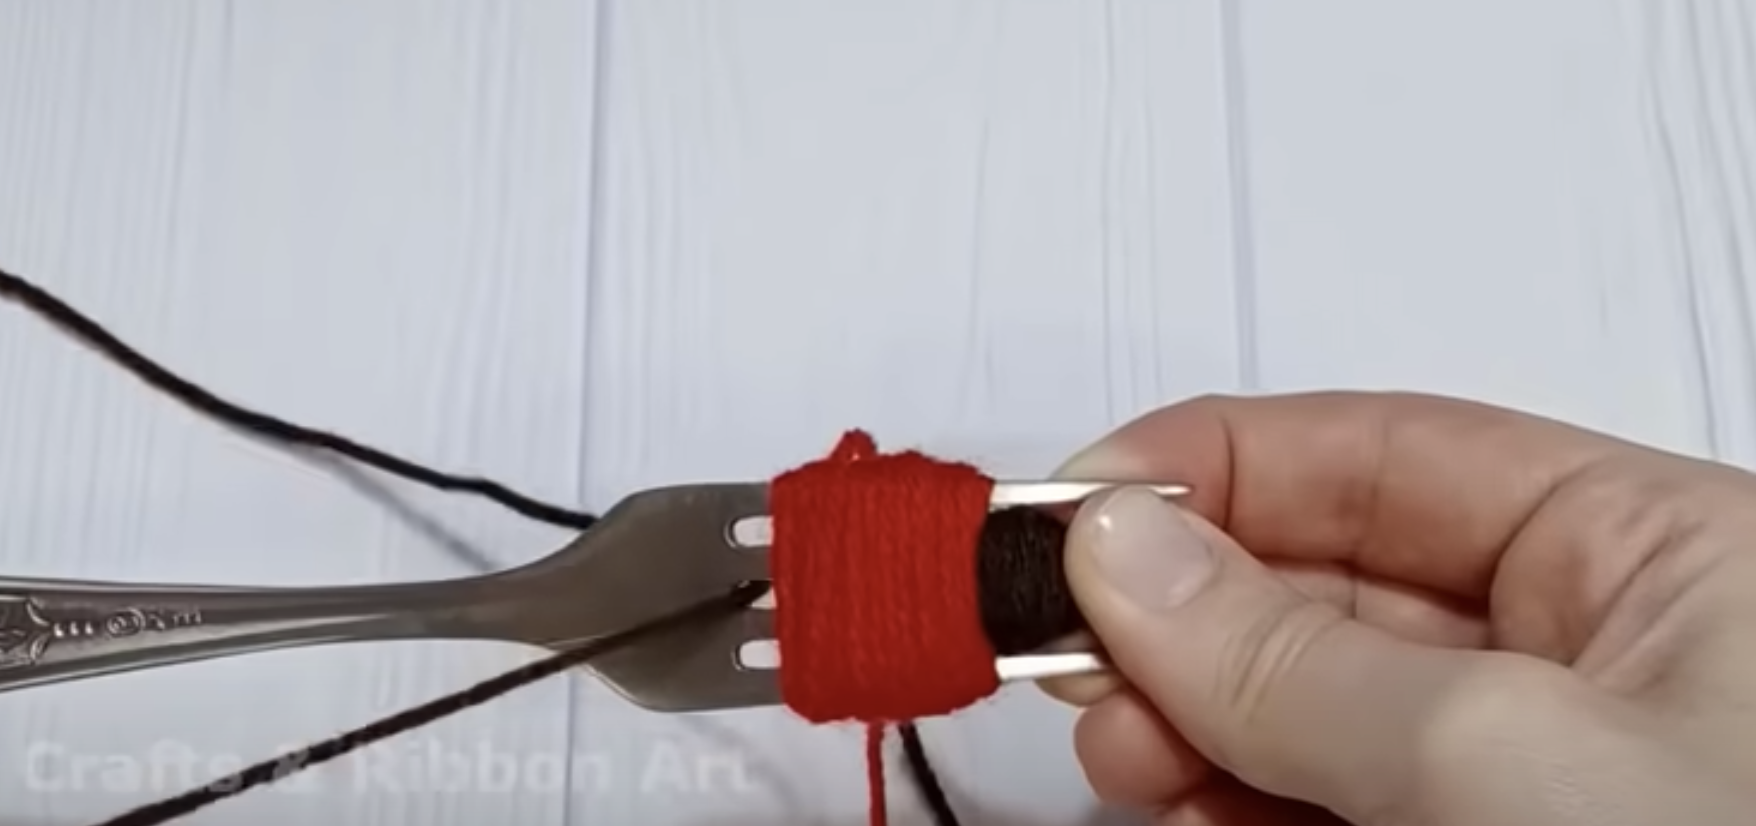 Esto te va a encantar: ¡Un tutorial para una reconfortante decoración que creas con un tenedor y un hilo!